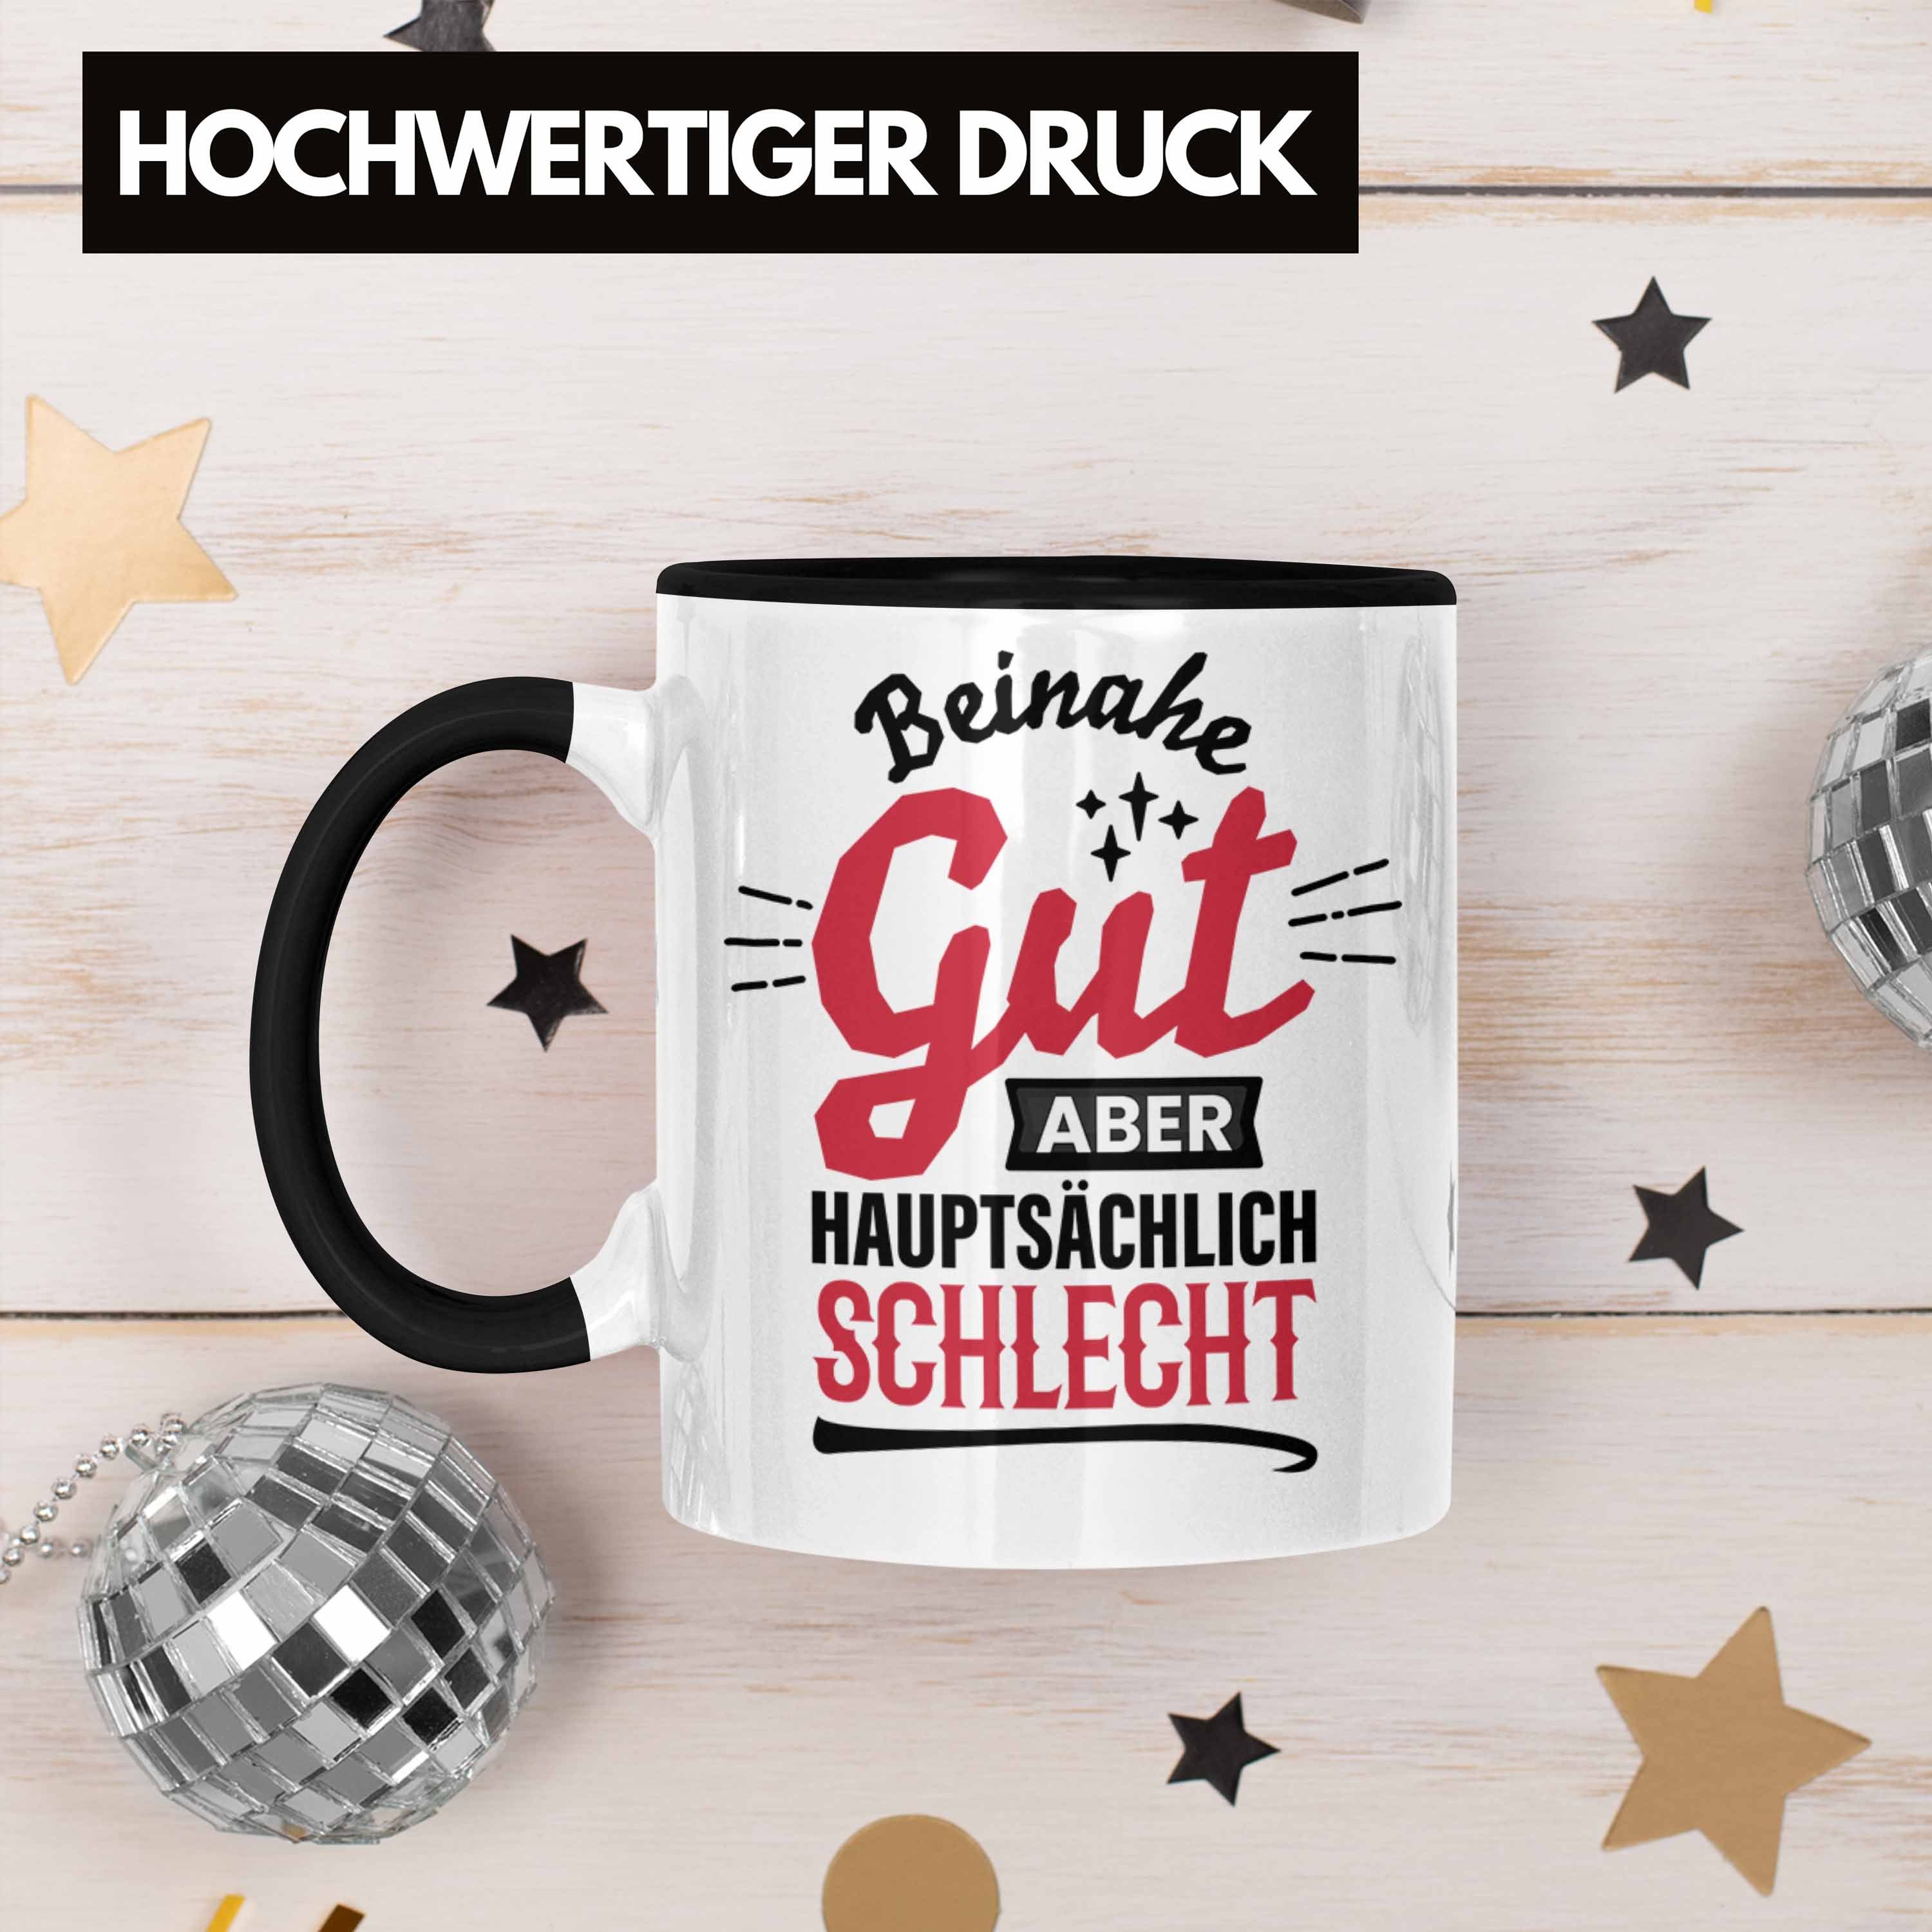 Trendation Tasse Lustiger Spruch Kaffee-Becher Sch Schwarz Hauptsächlich Tasse Gut Beinahe Aber